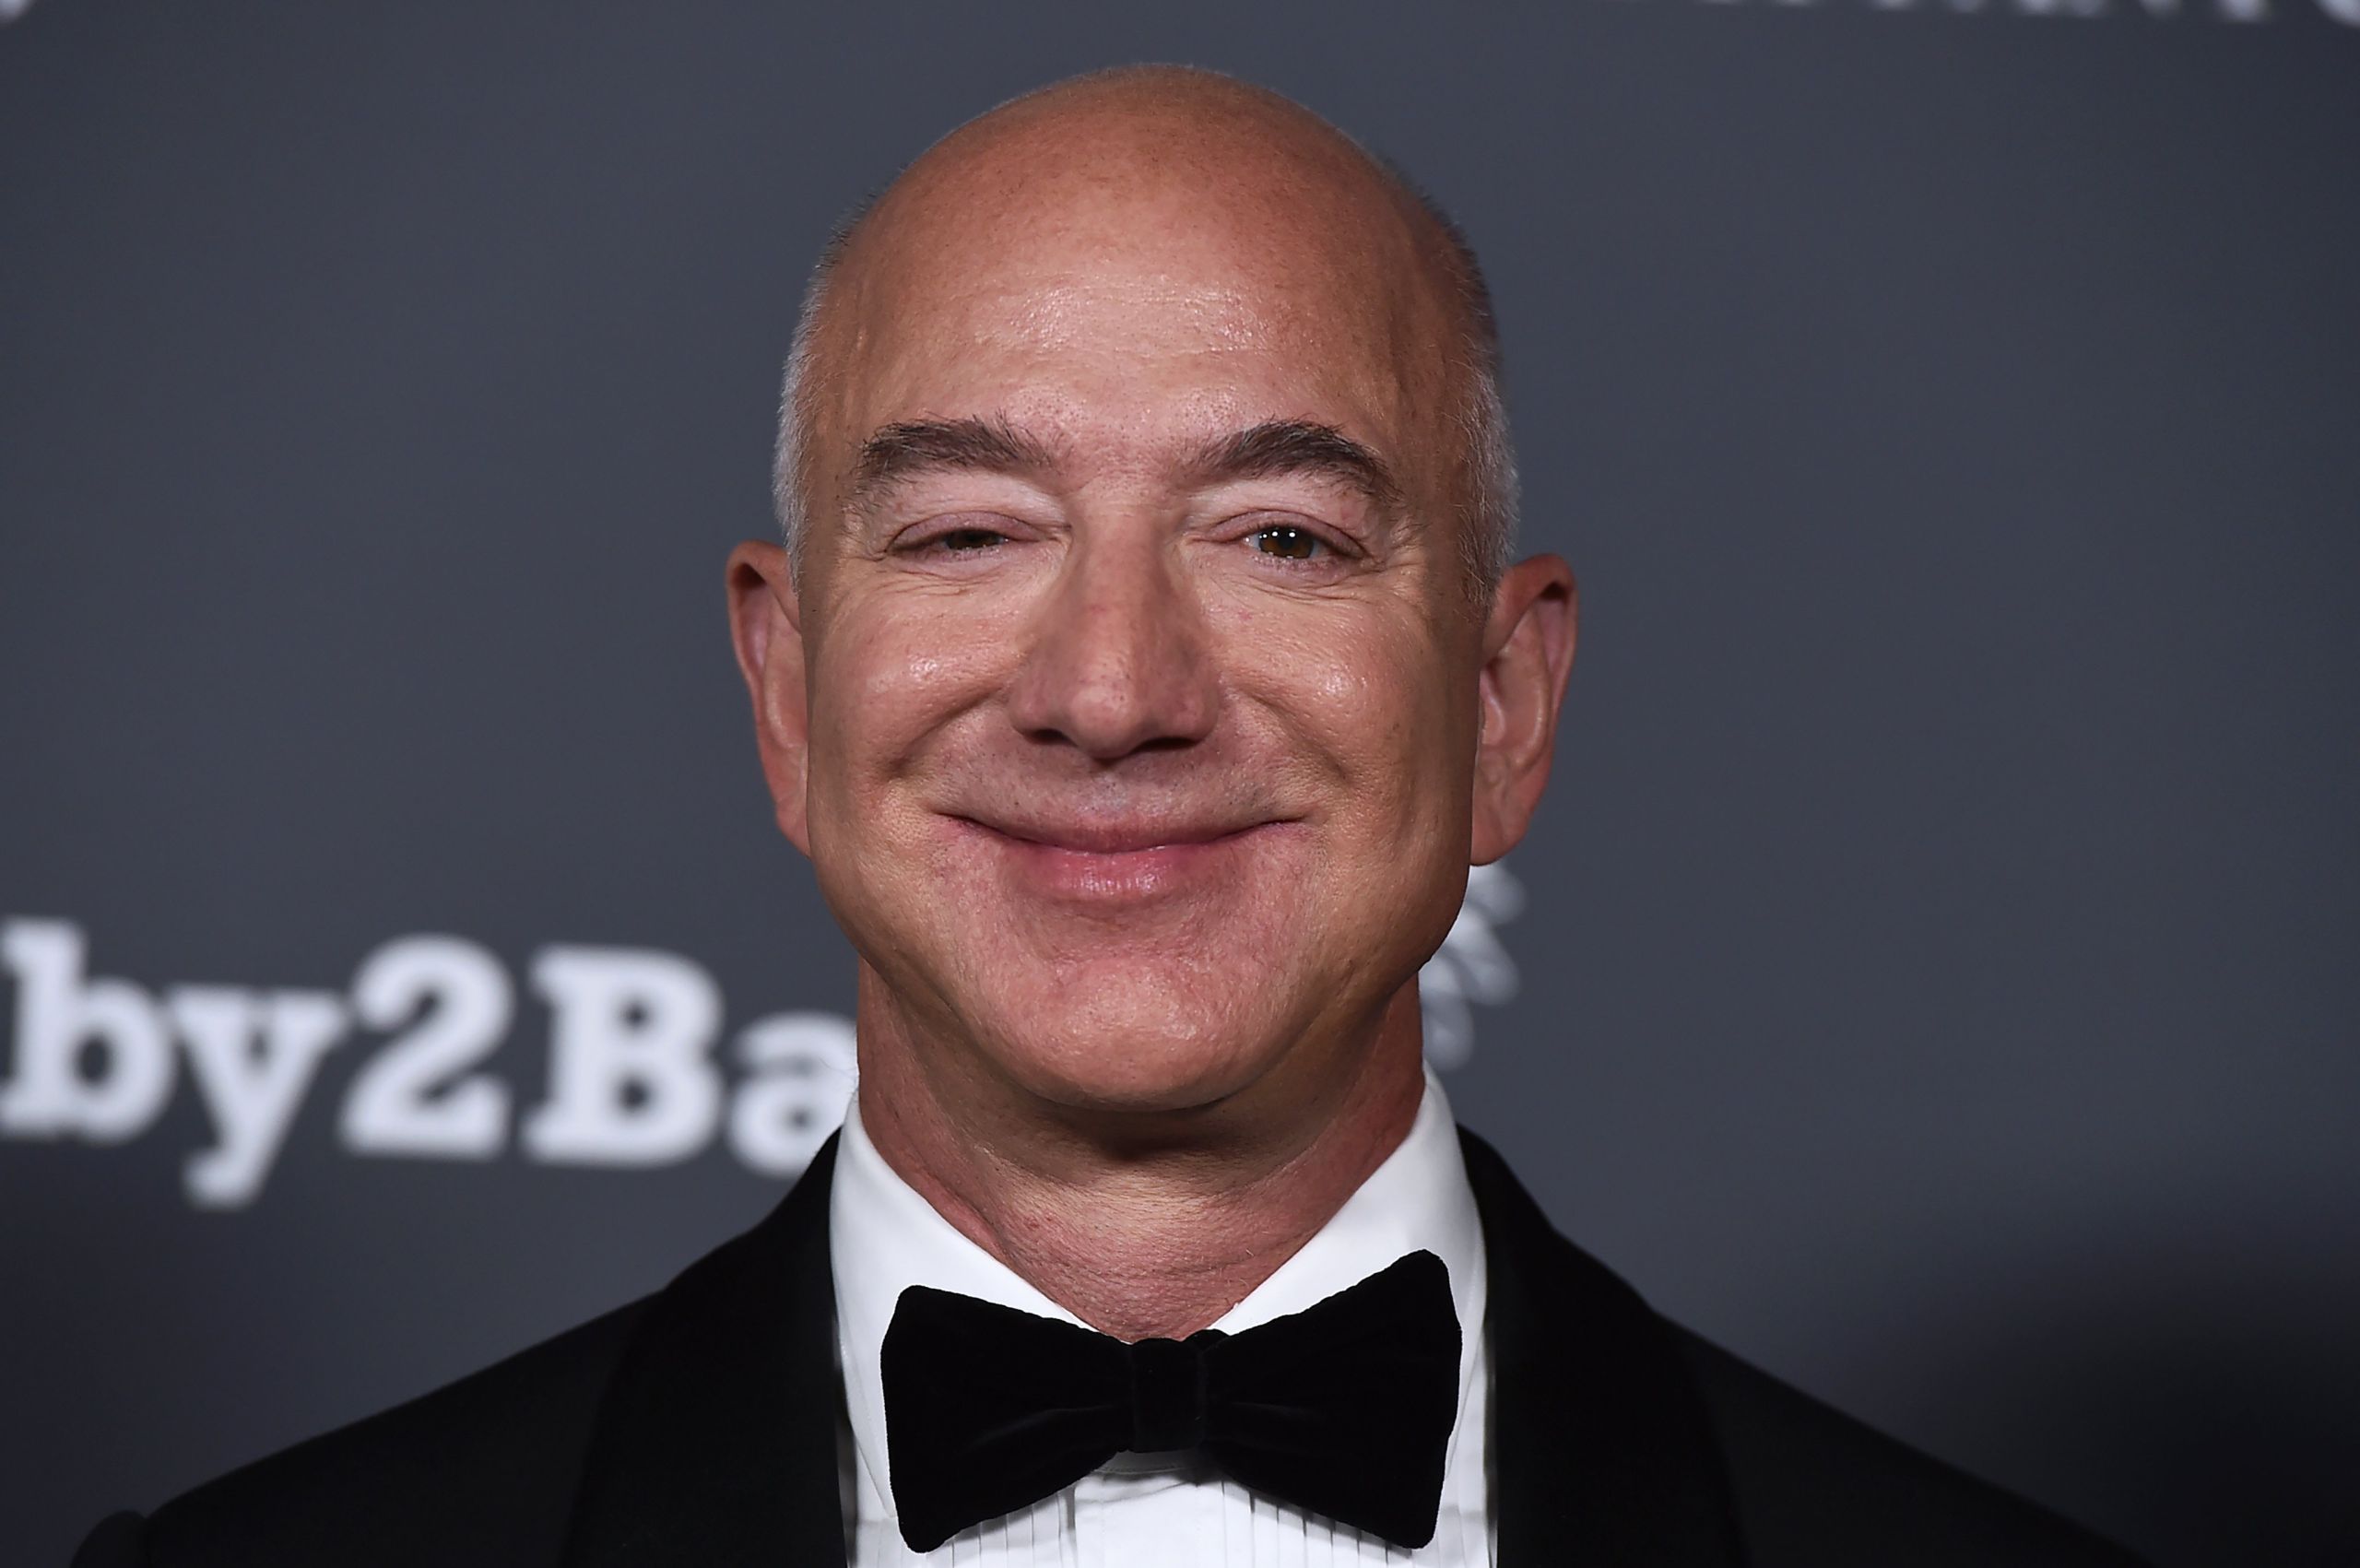 Jeff Bezos scaled